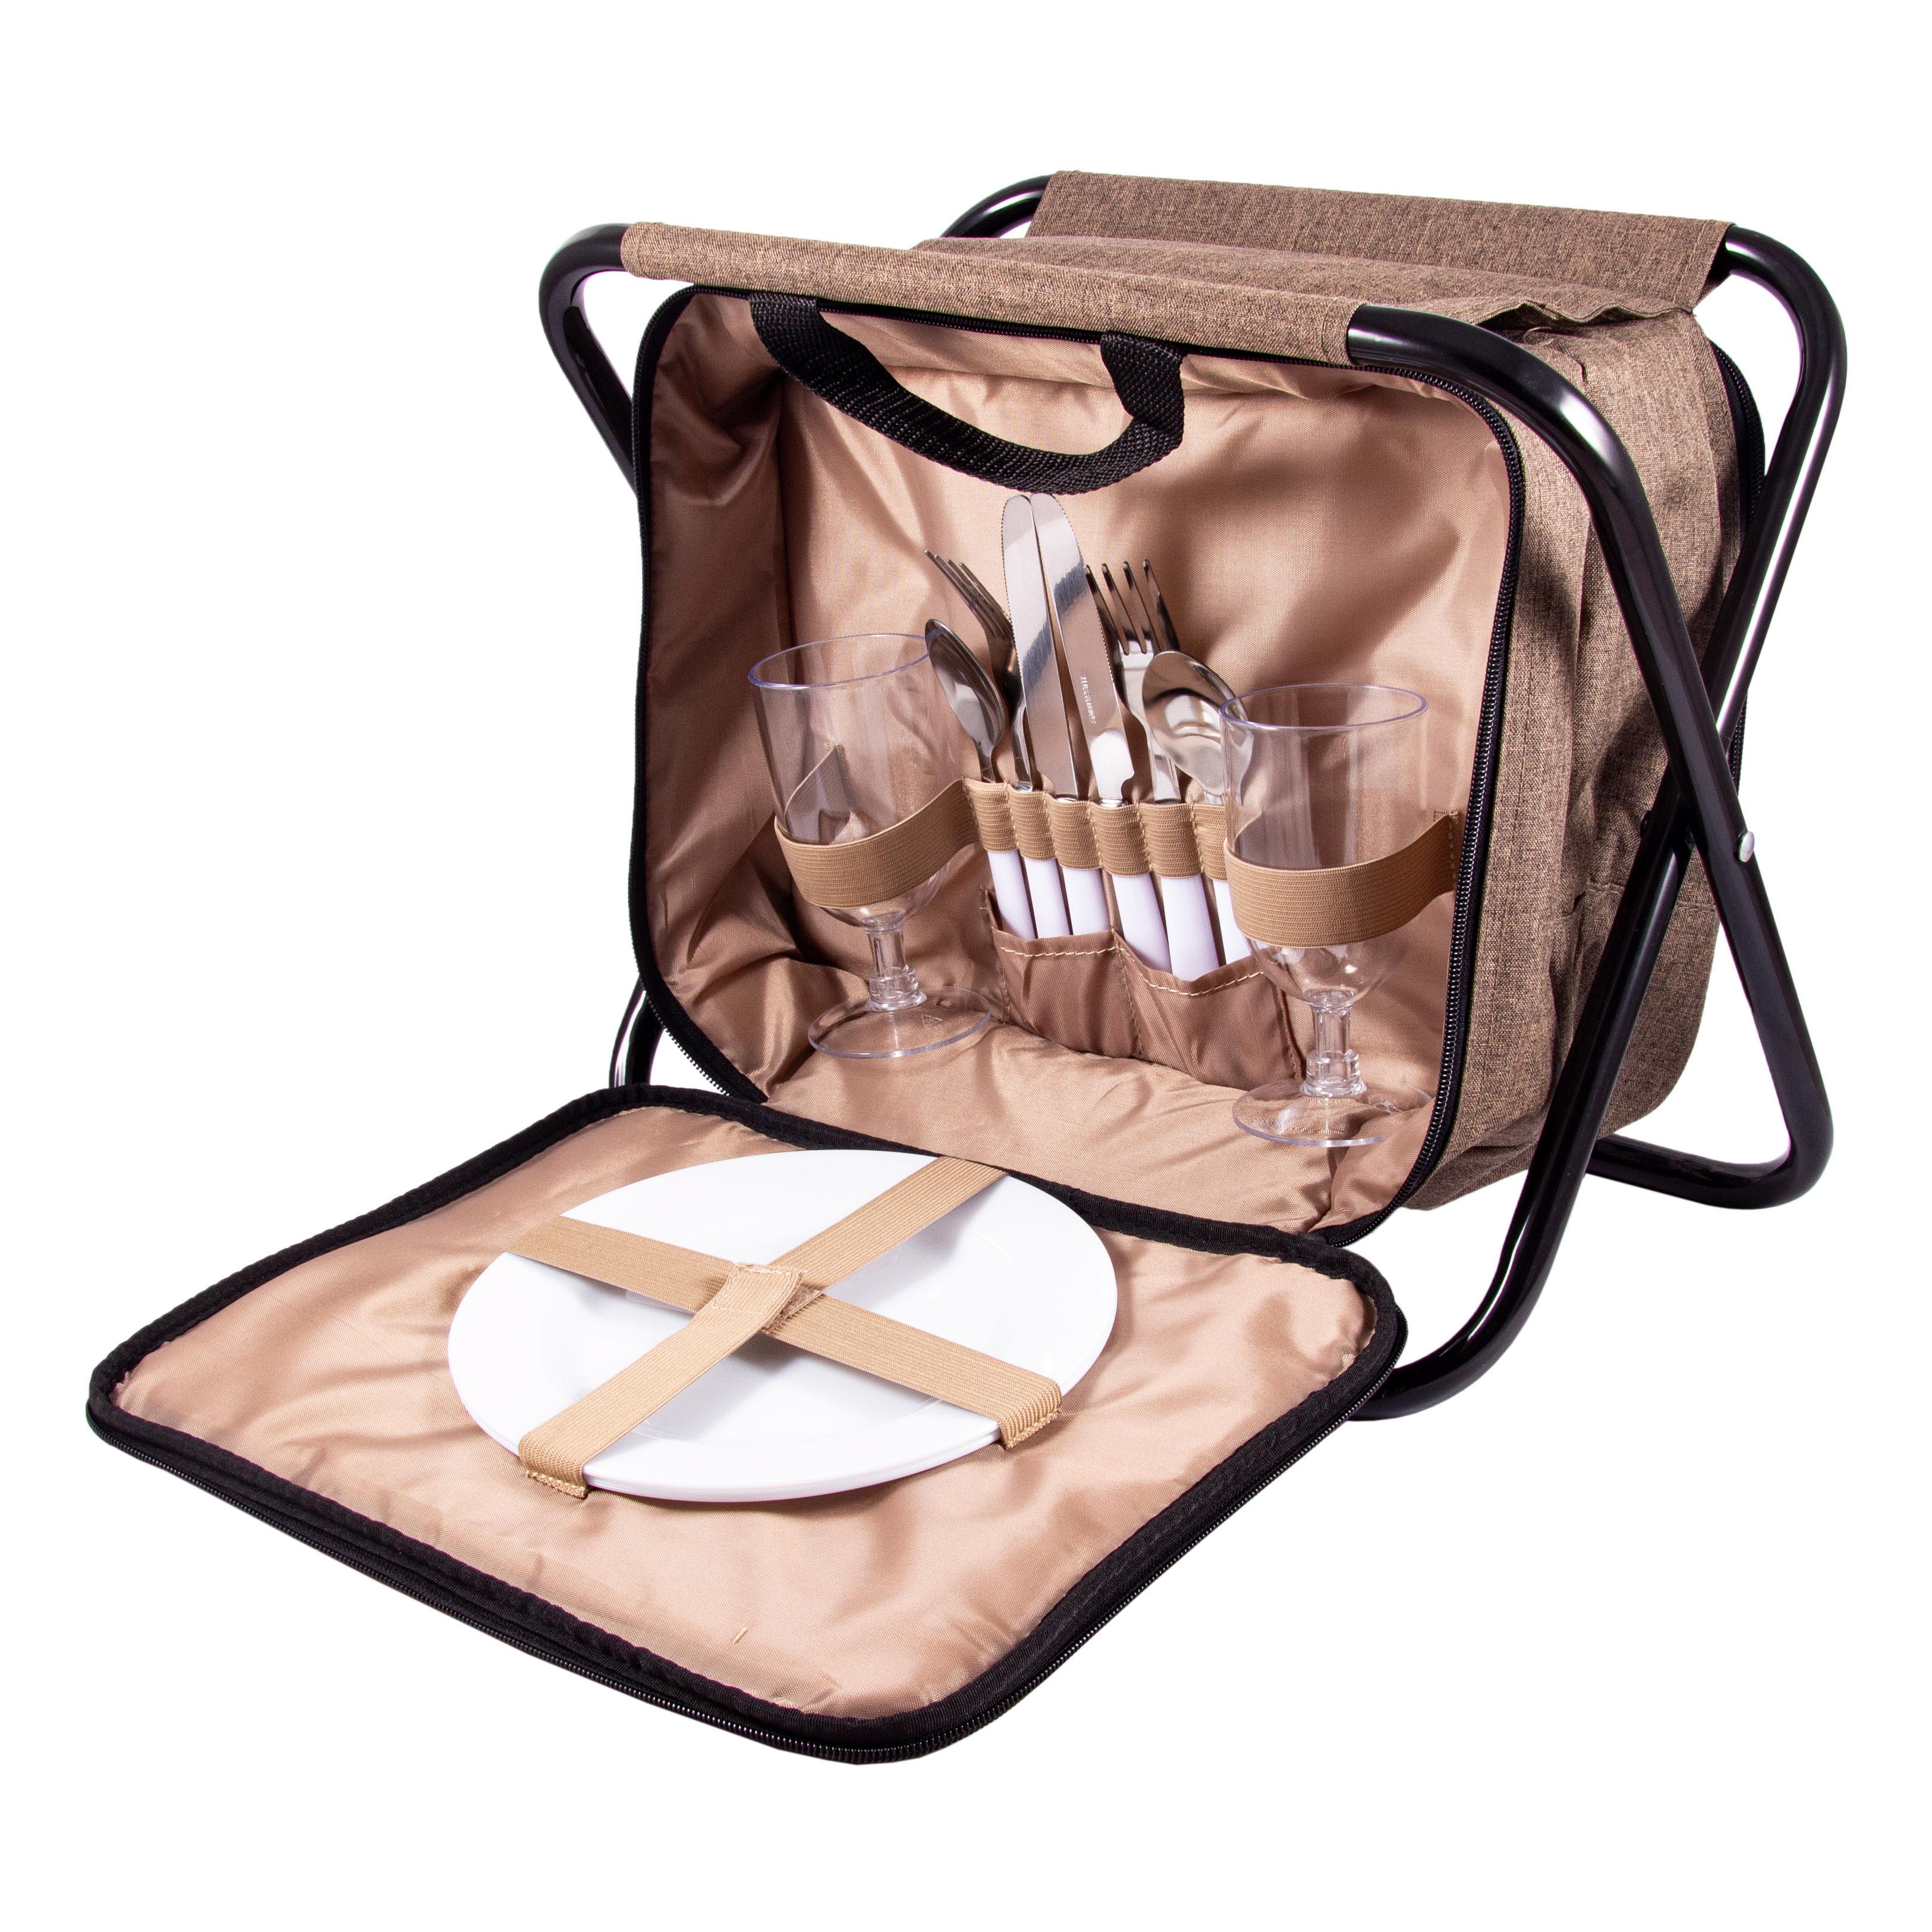 фото Набор для пикника на 2 персоны в сумке-стульчике, 33x23x25 см, арт. 130021 подарки и сувениры